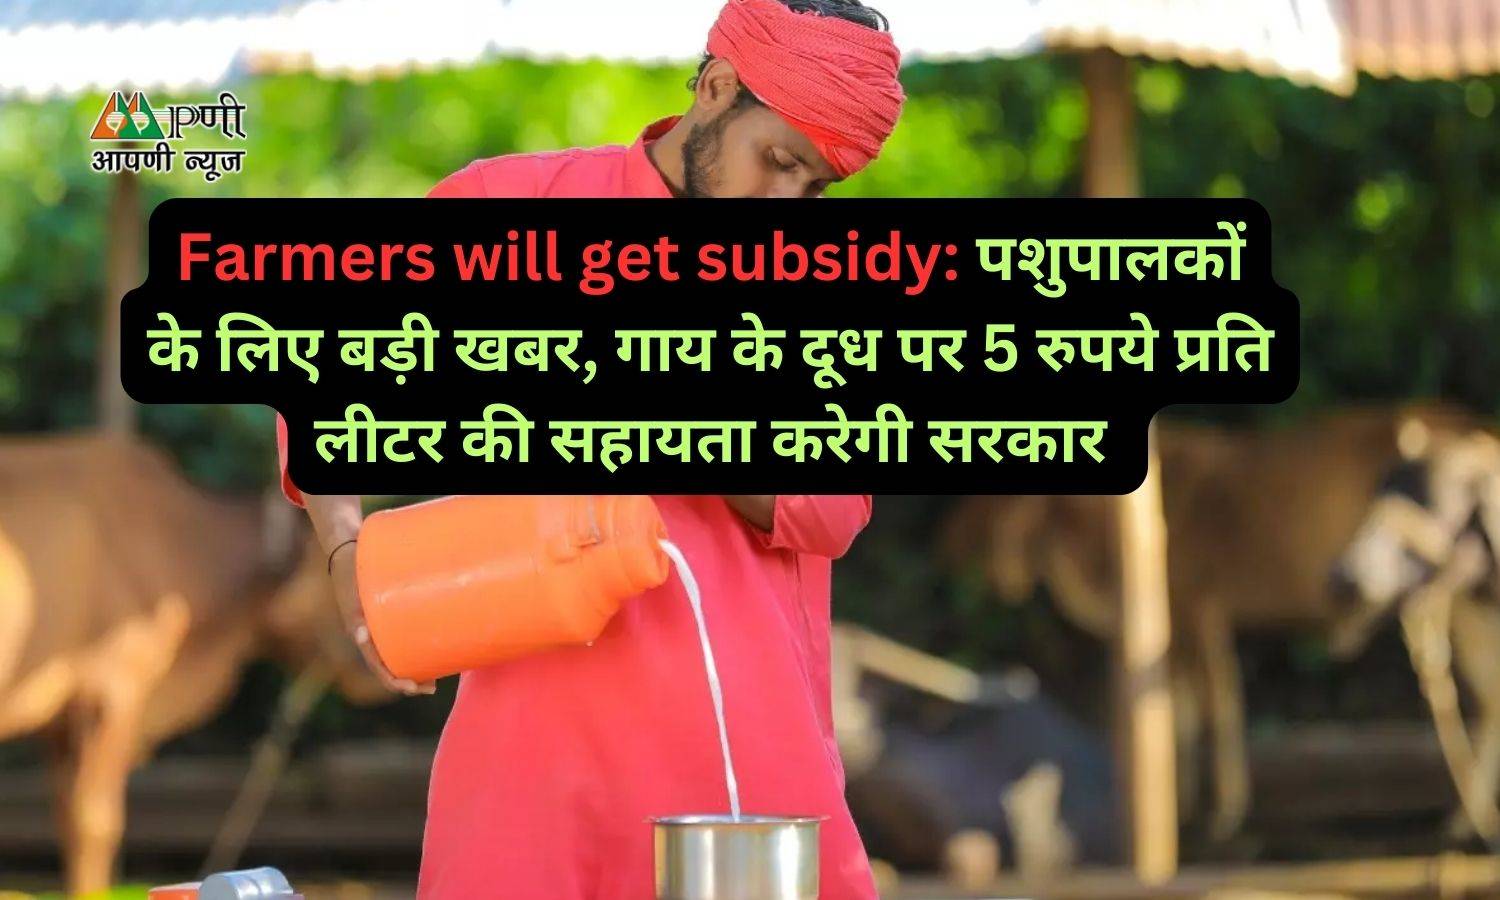 Farmers will get subsidy: पशुपालकों के लिए बड़ी खबर, गाय के दूध पर 5 रुपये प्रति लीटर की सहायता करेगी सरकार